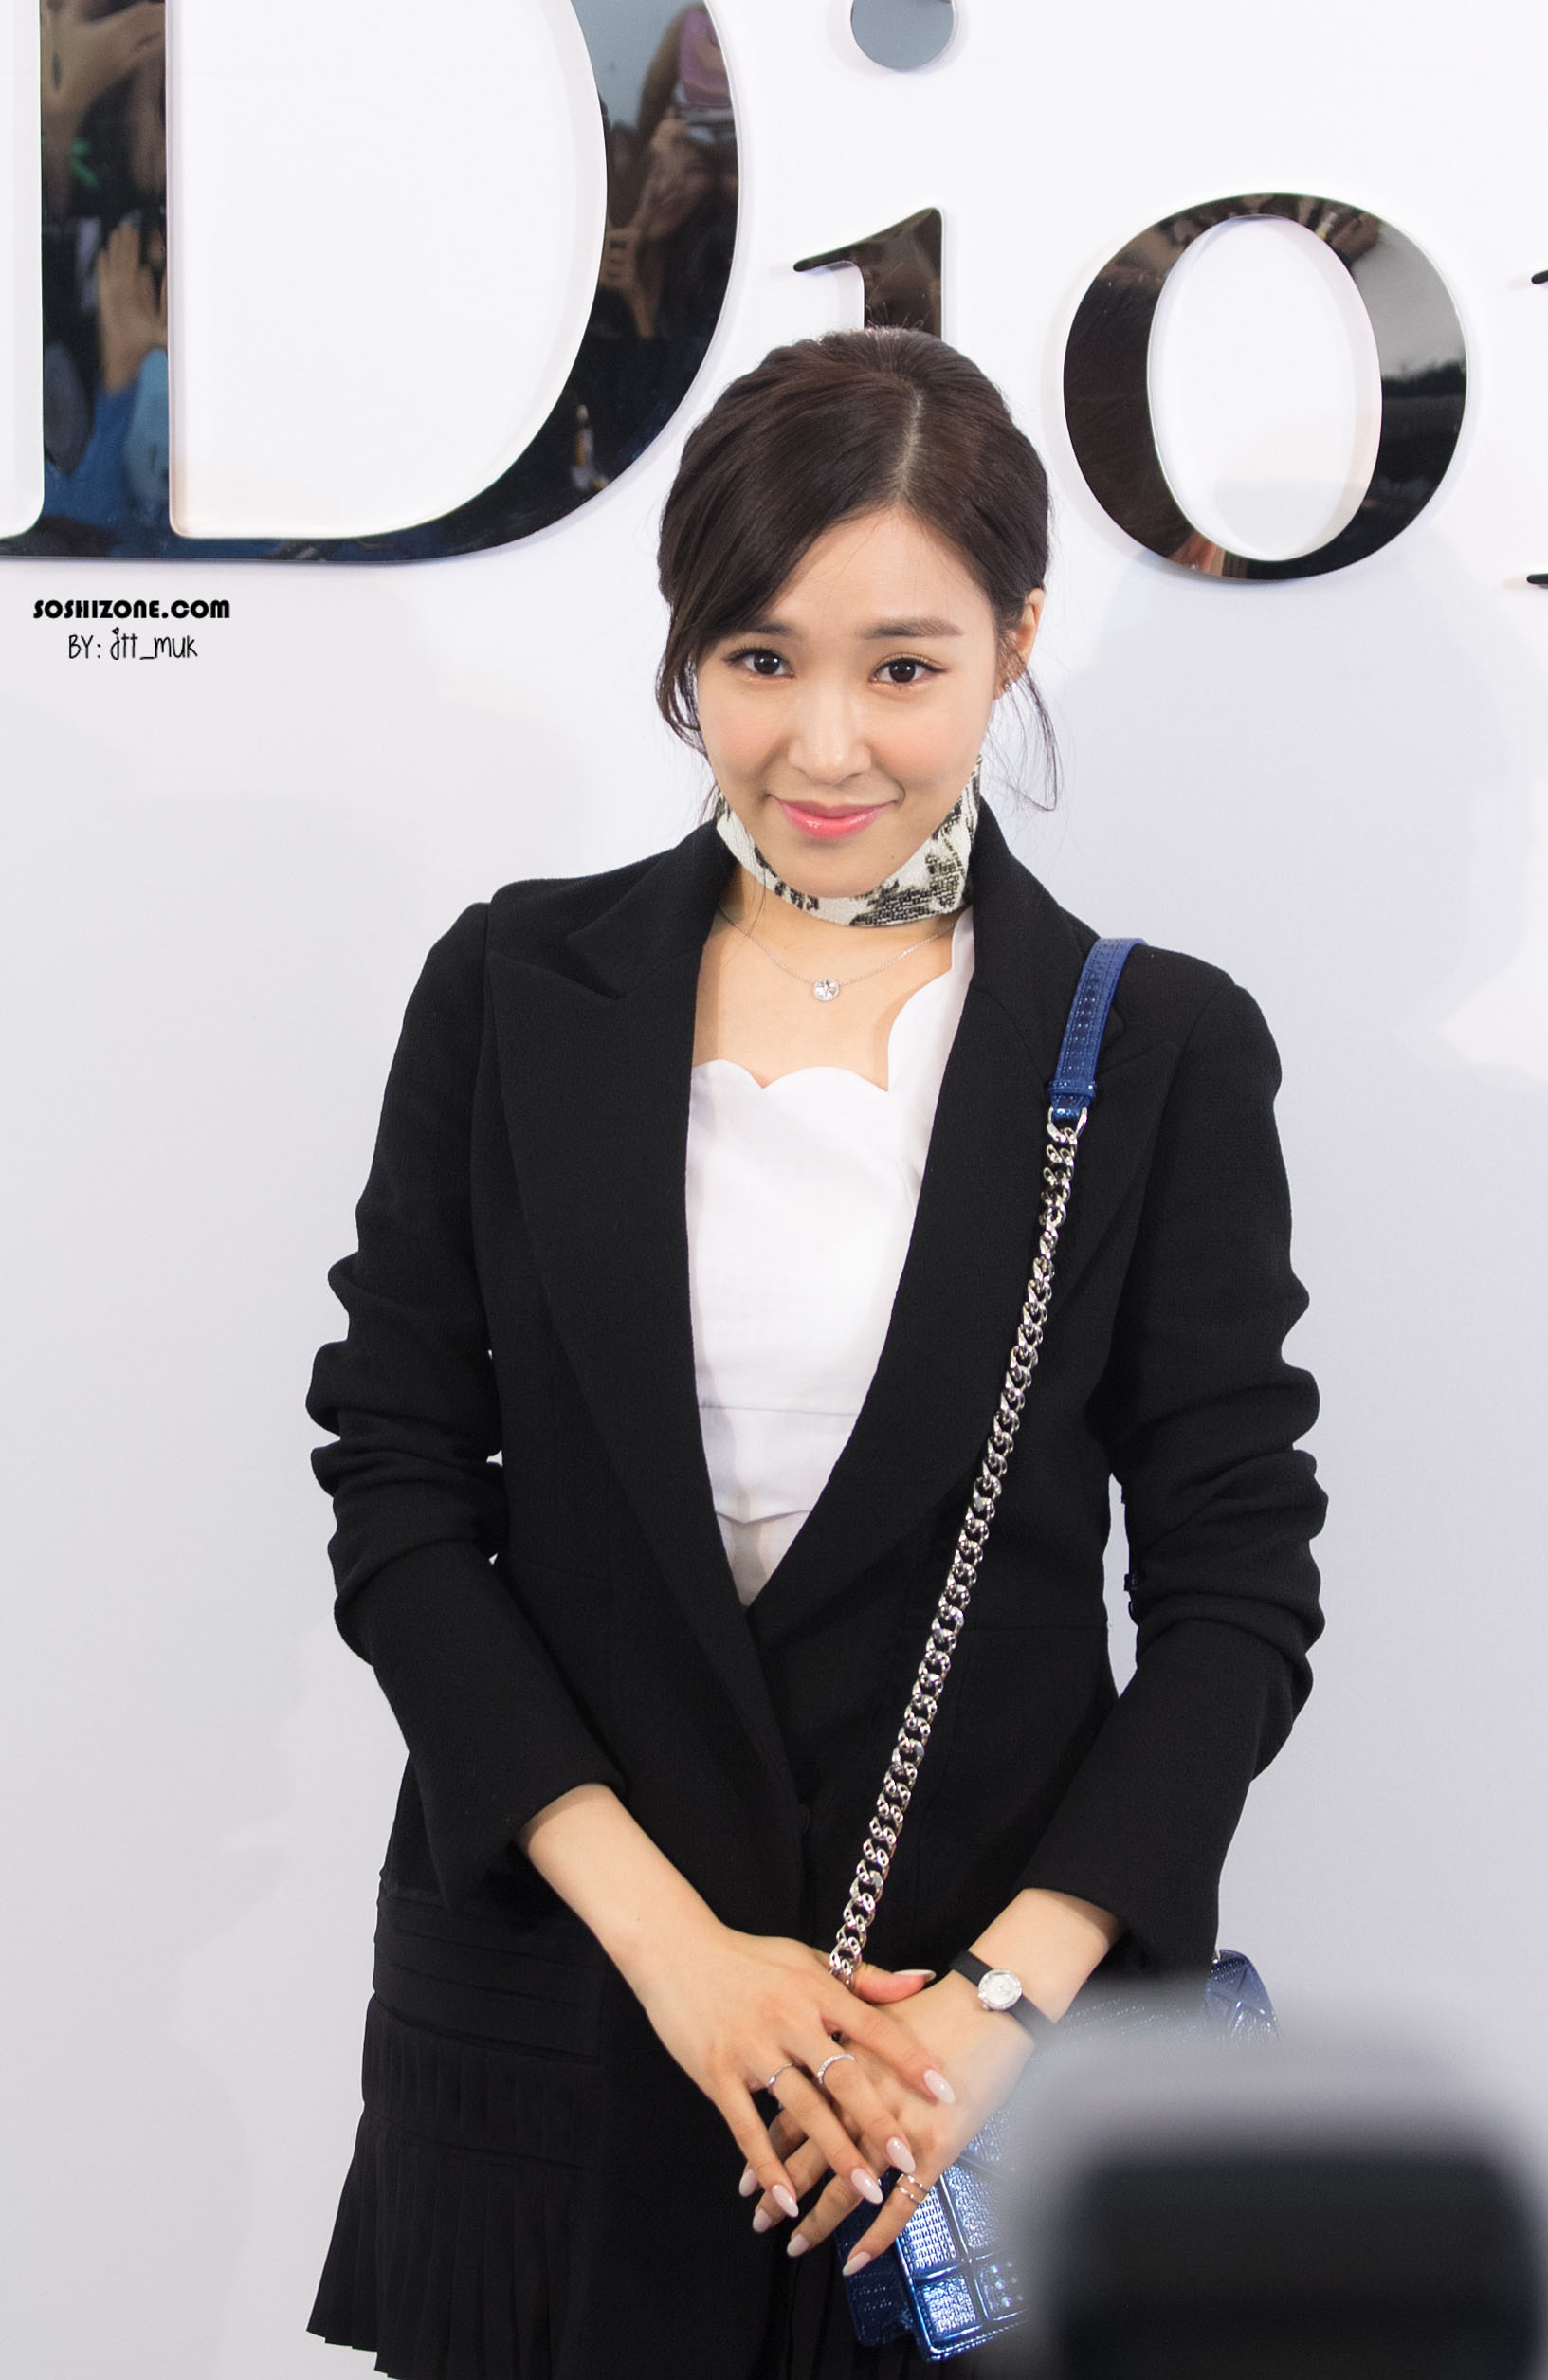 [PIC][17-02-2016]Tiffany khởi hành đi Thái Lan để tham dự sự kiện khai trương chi nhánh của thương hiệu "Christian Dior" vào hôm nay - Page 14 241E483A5728D3BB37D881